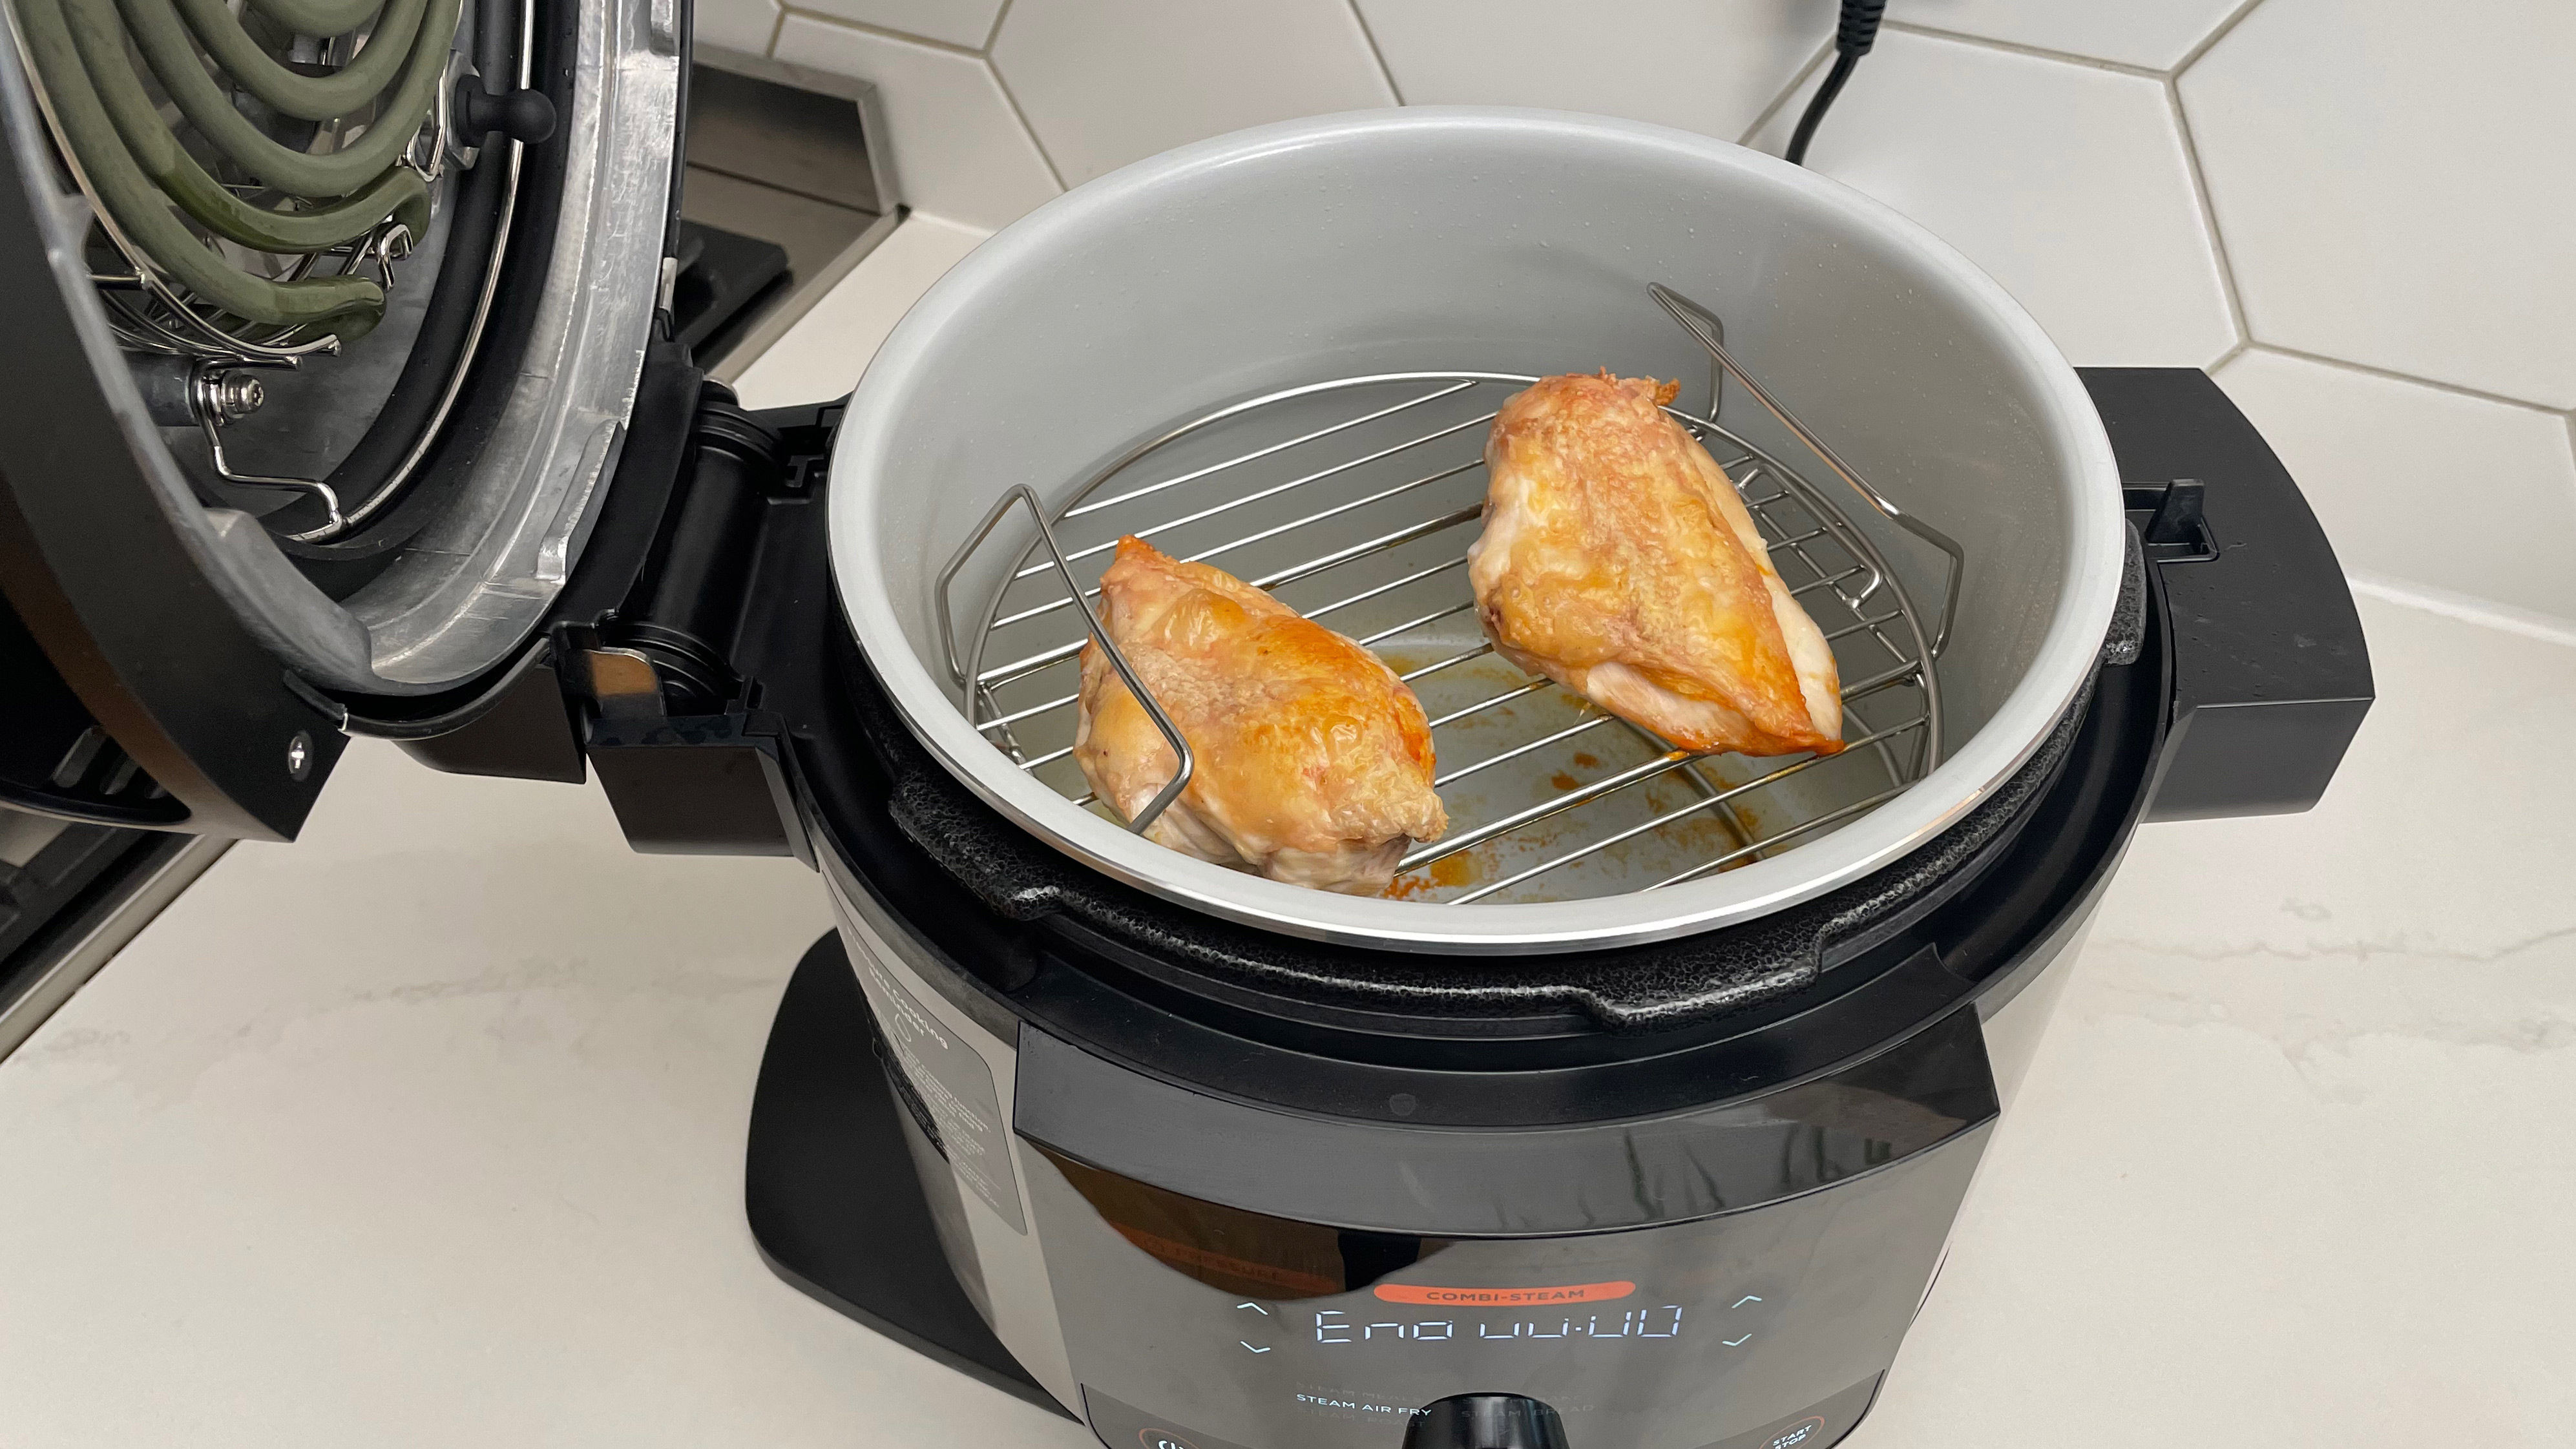 Mode Steam Combi di Ninja Foodi 15-in-1 SmartLid Multi-Cooker digunakan untuk memasak dada ayam